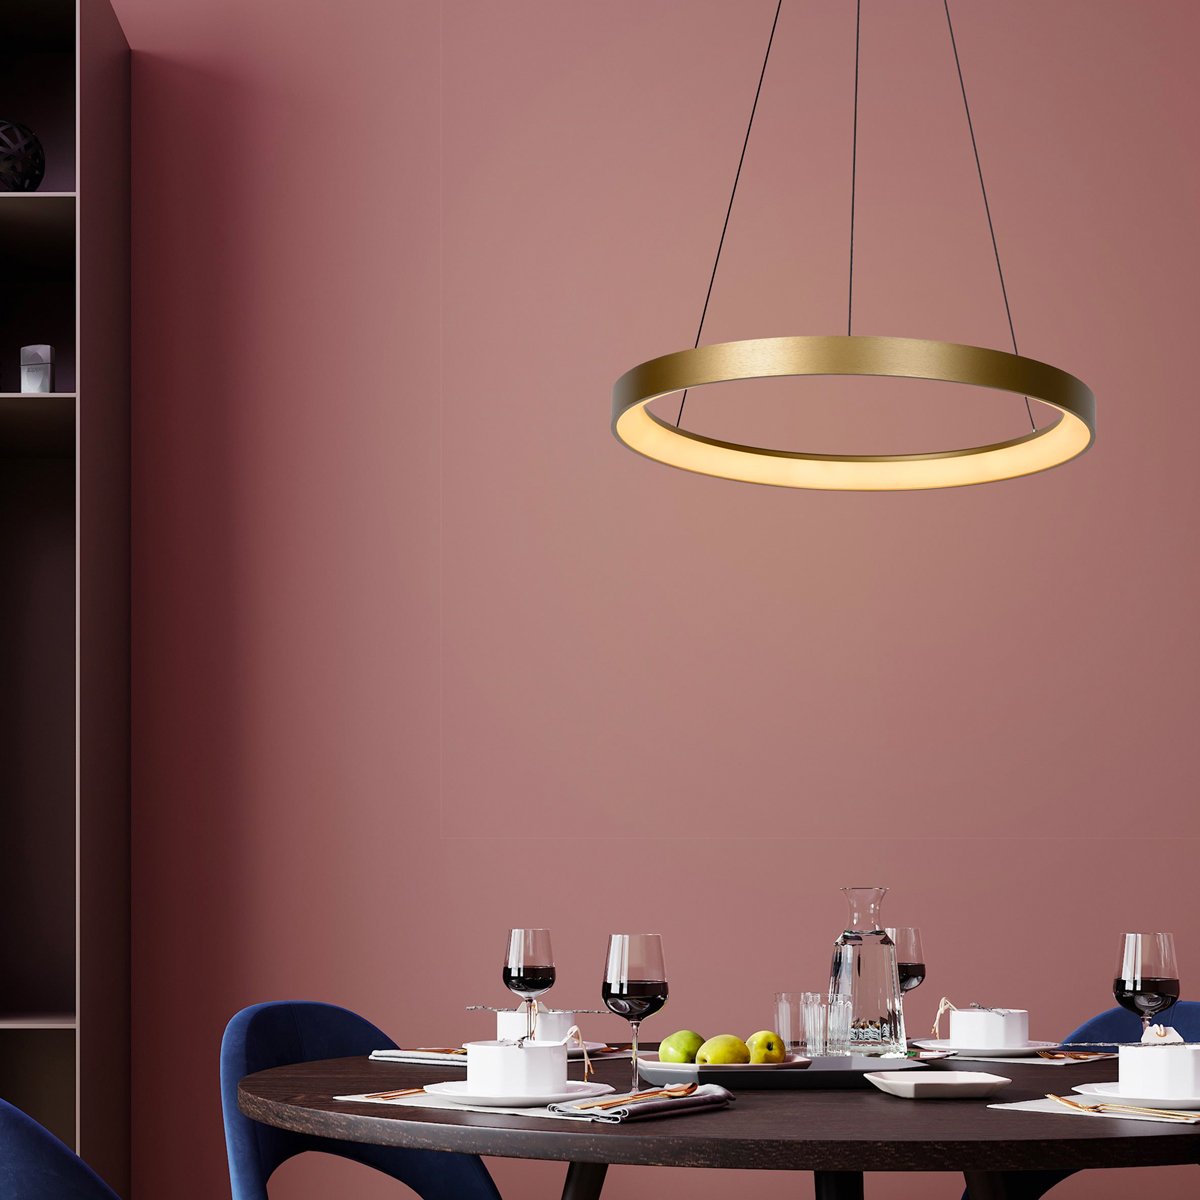 Deze grote lamp is perfect voor boven een ronde tafel. Met de mat messing lamp benadruk je extra de vorm van de ronde eettafel. 